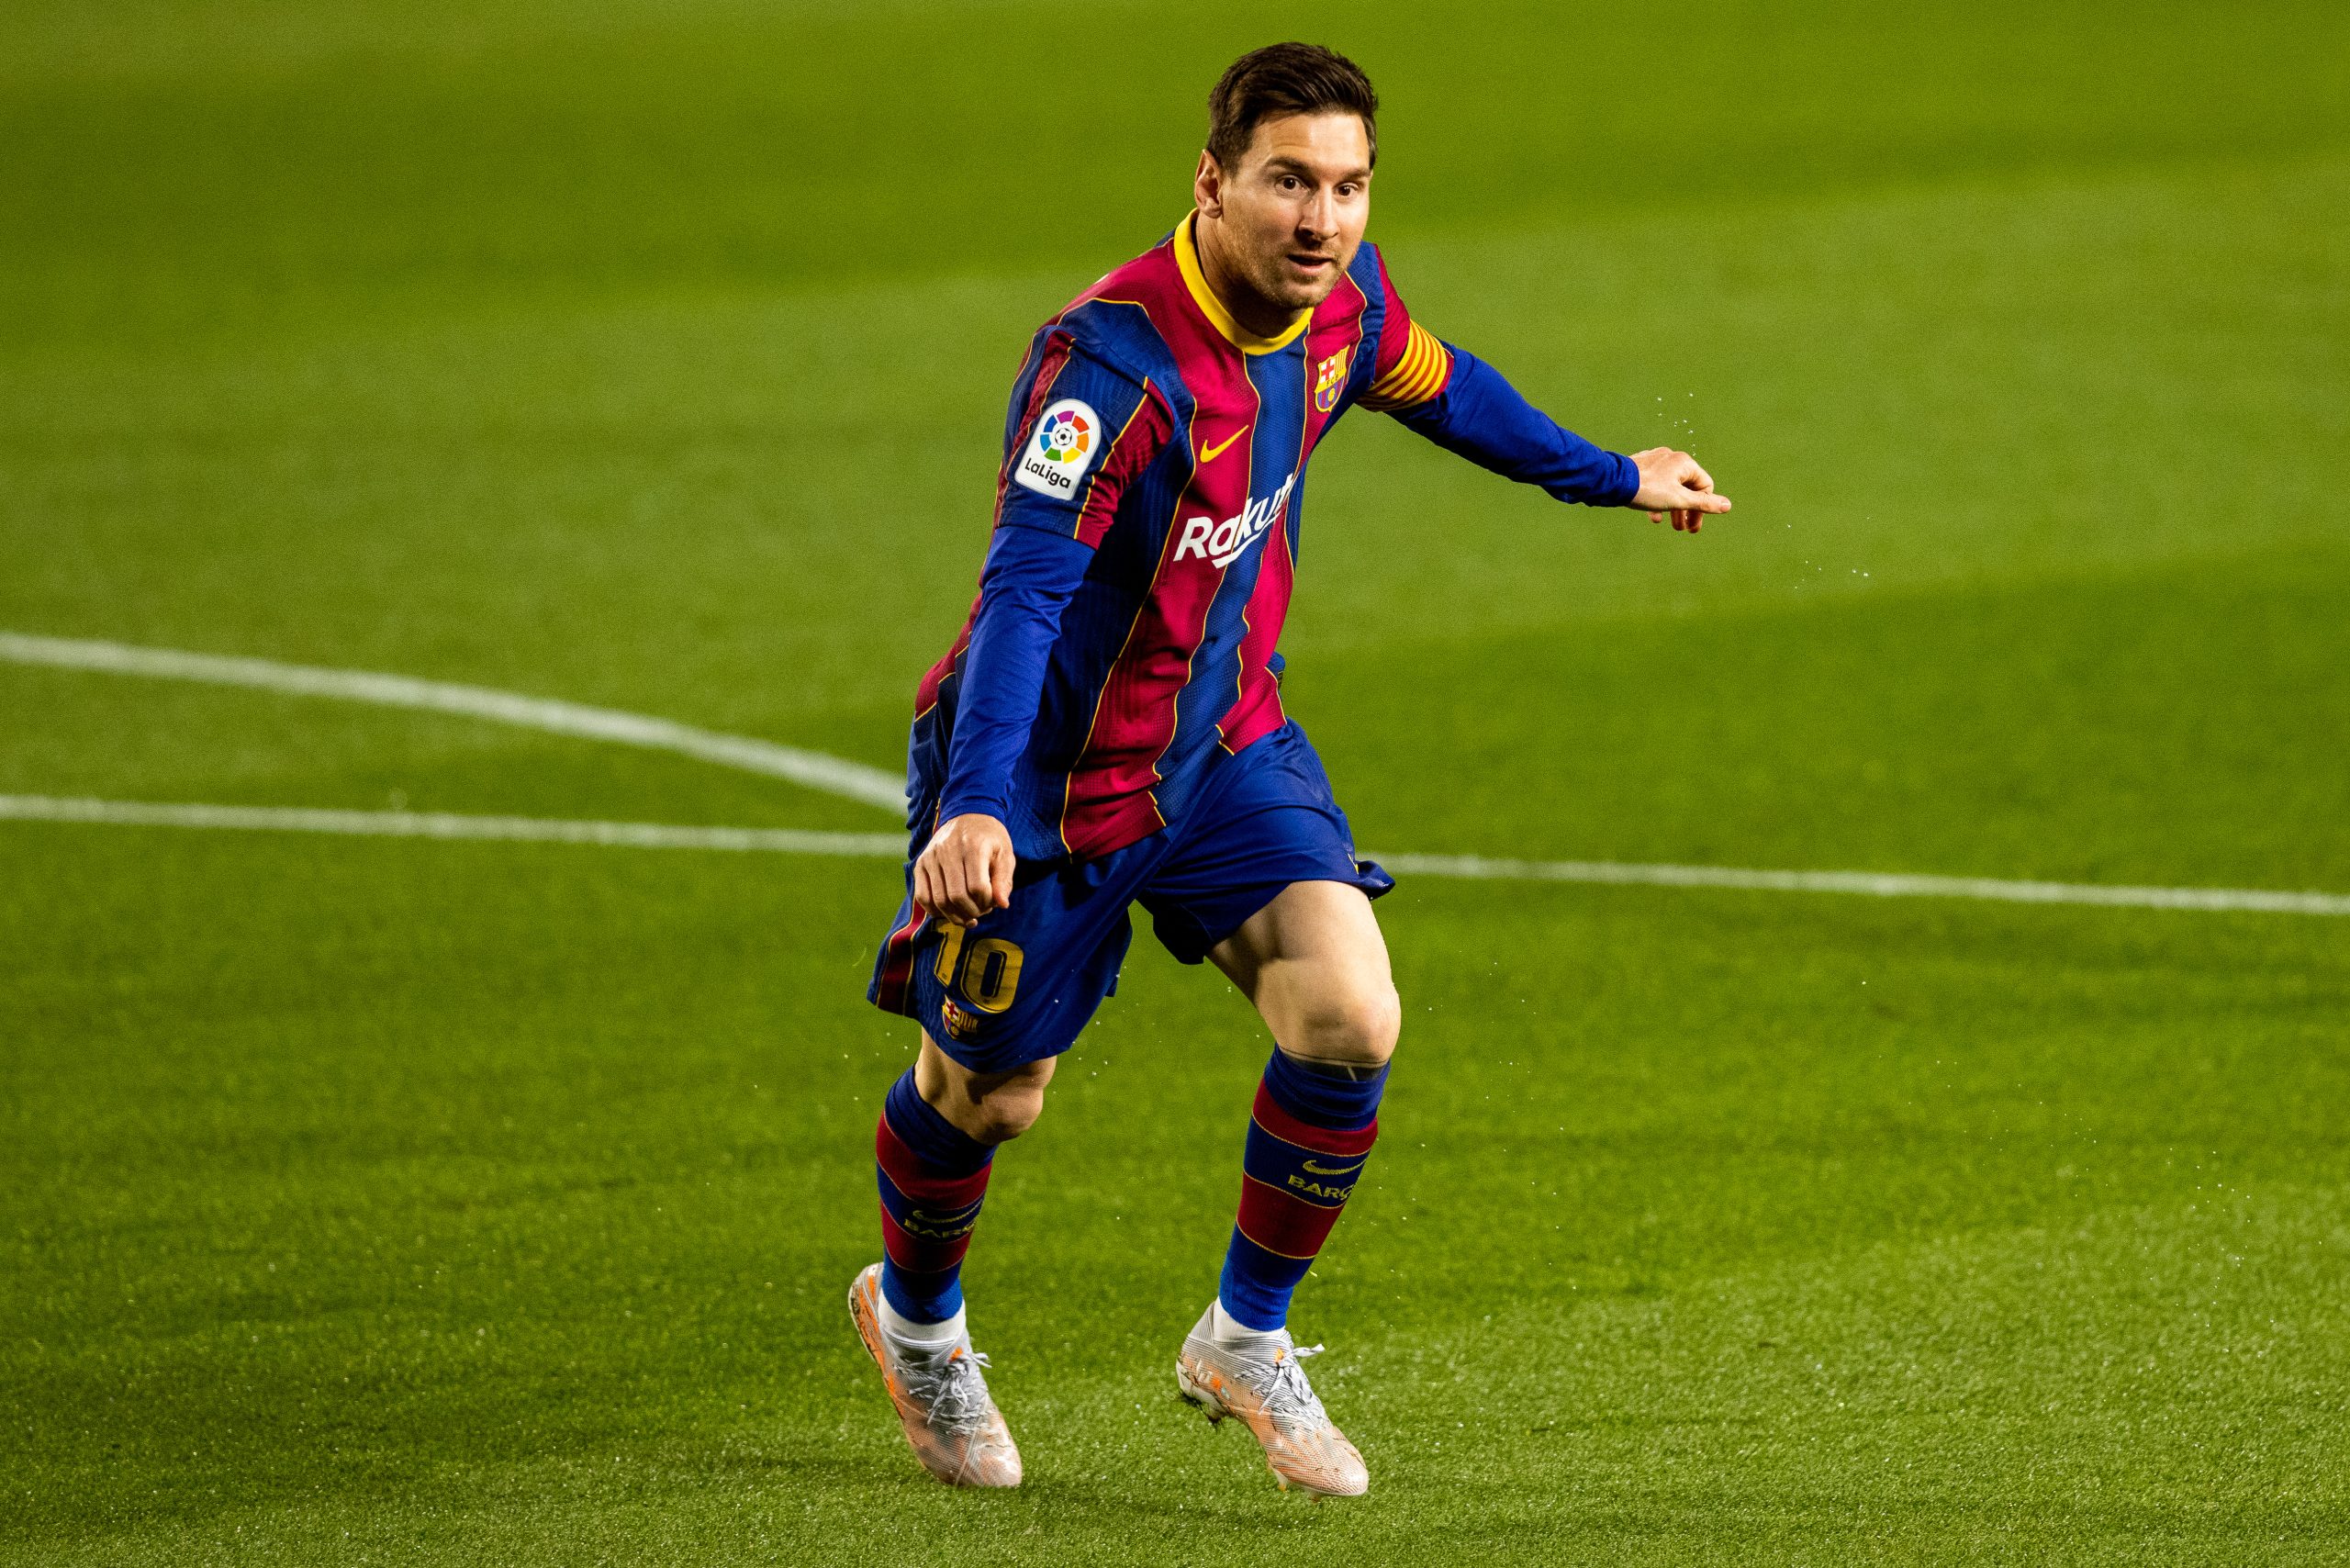 Kỹ thuật đá bóng của Messi: Sự khác biệt tạo nên vị thế của ngôi sao bóng đá - Vé Bóng Đá Online